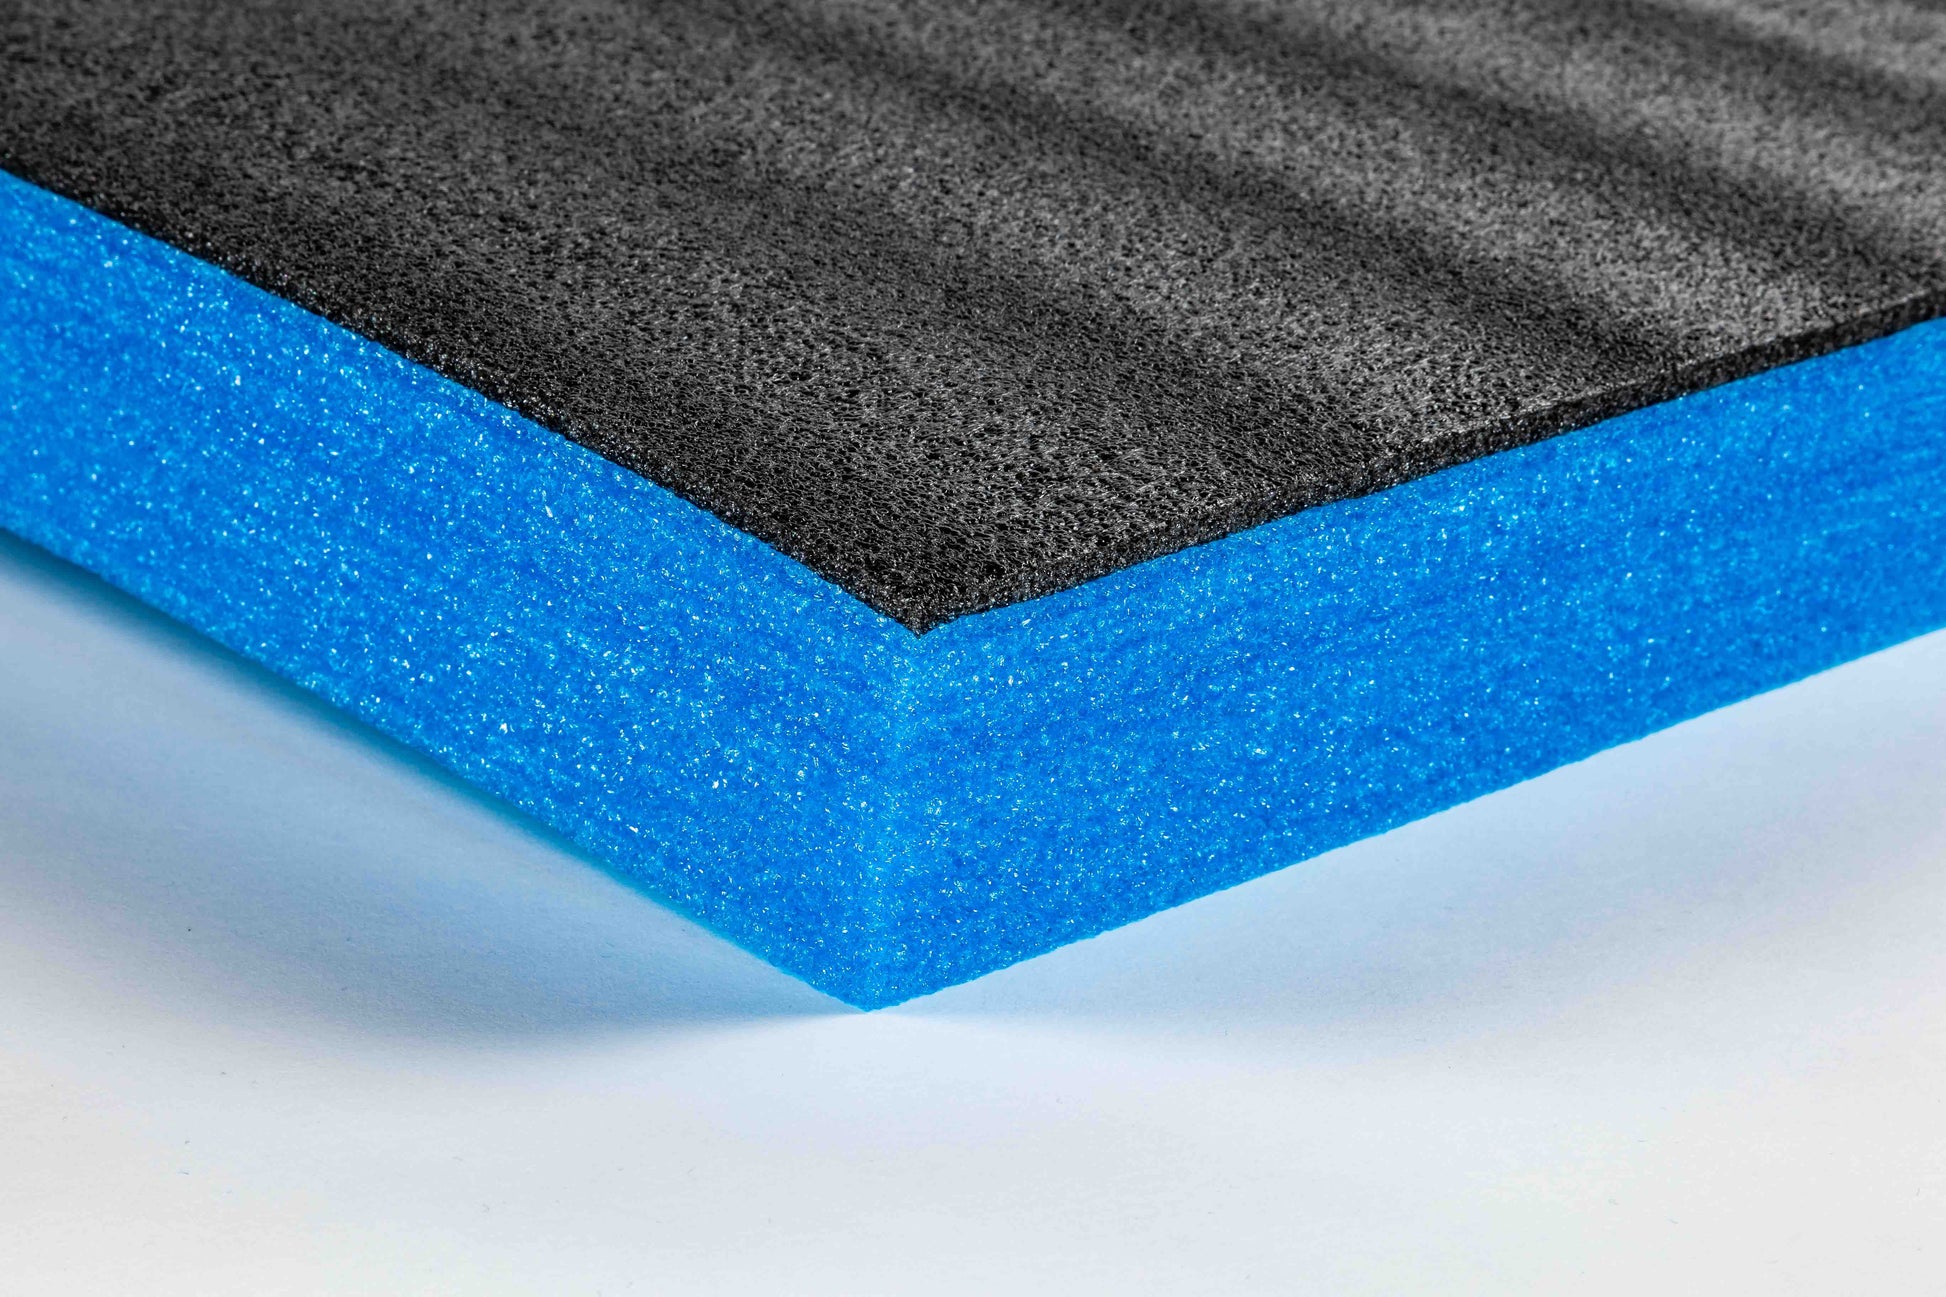 TYGR Foam Schaumstoffeinlagen 1000x600x70 blau im Detail